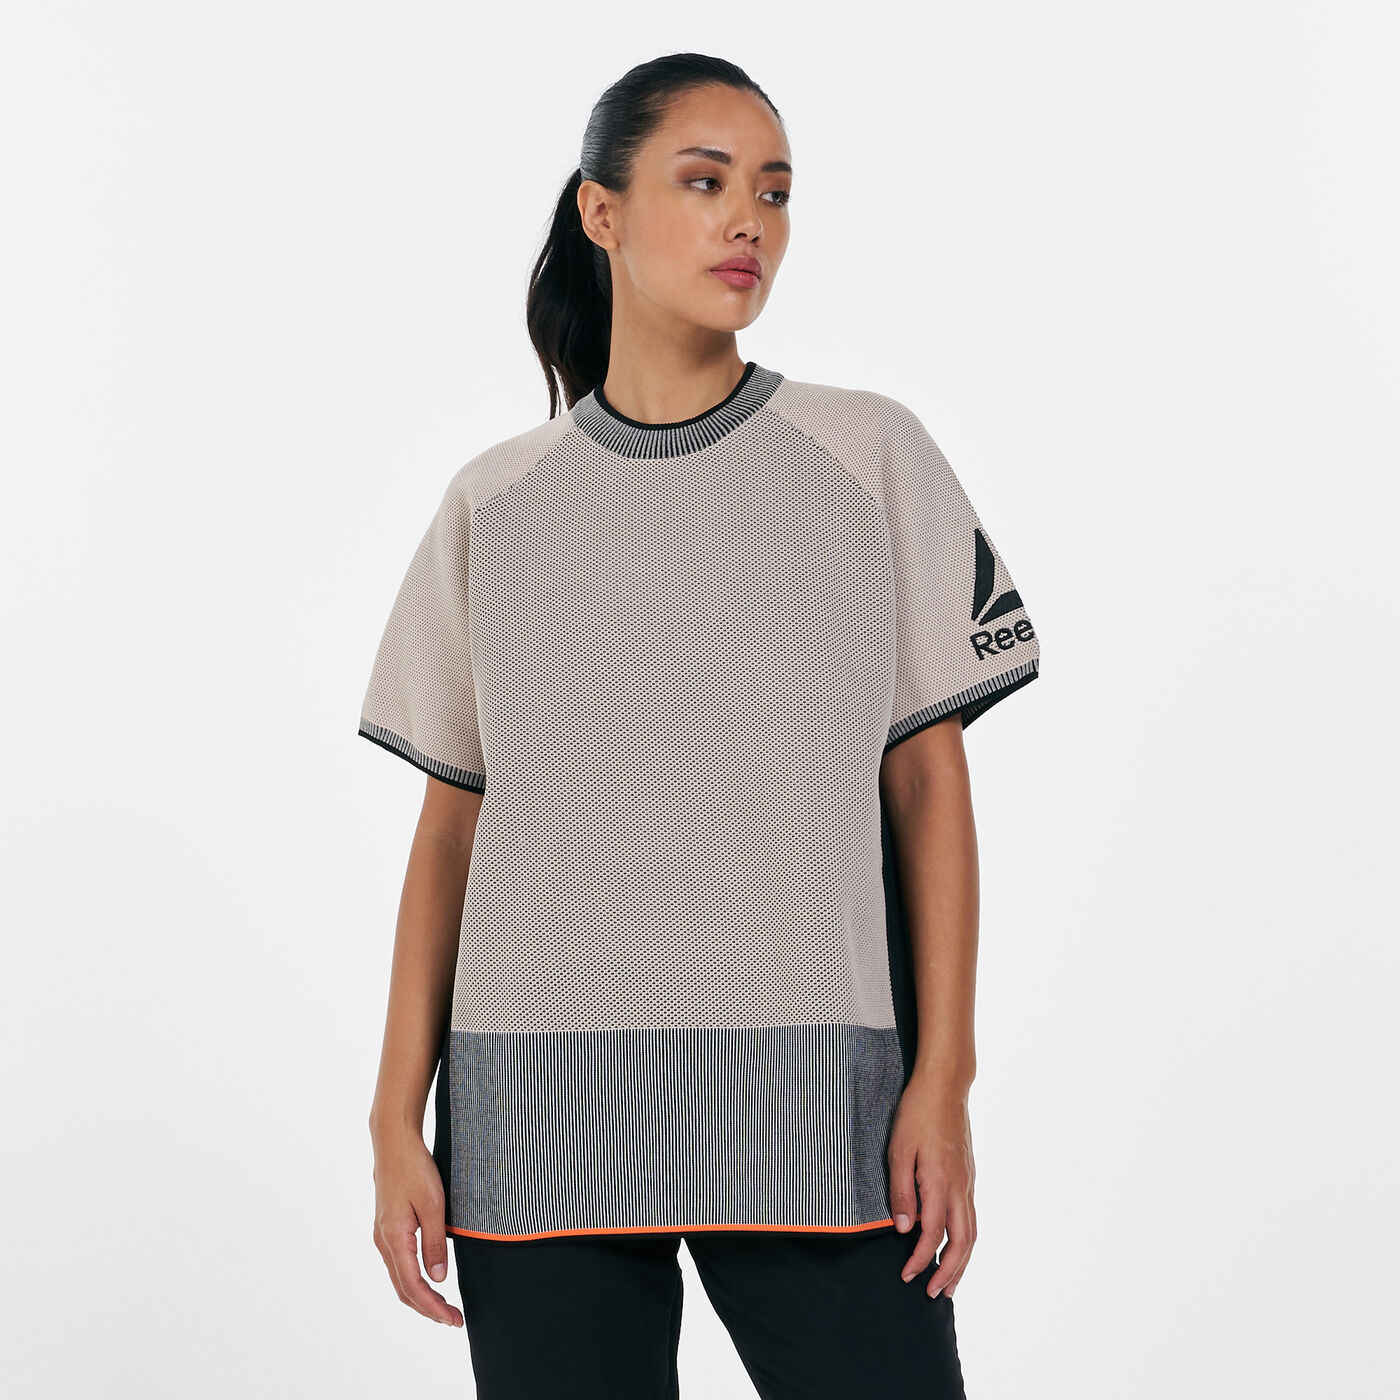 Women's Cardio Knit Fashion T-Shirt